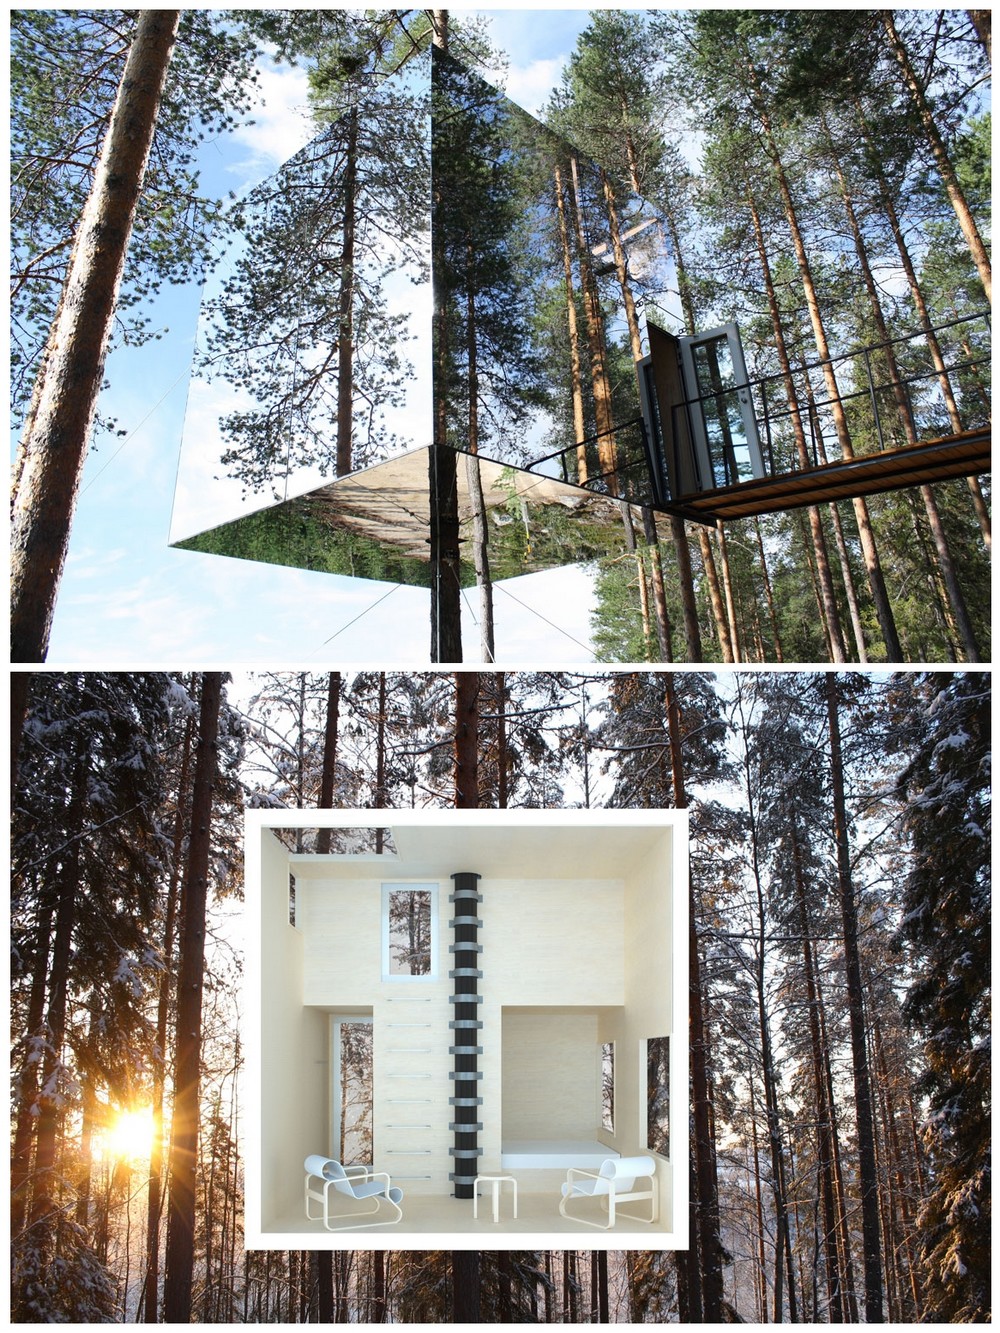 Mirrorcube TreeHotel in Sweden